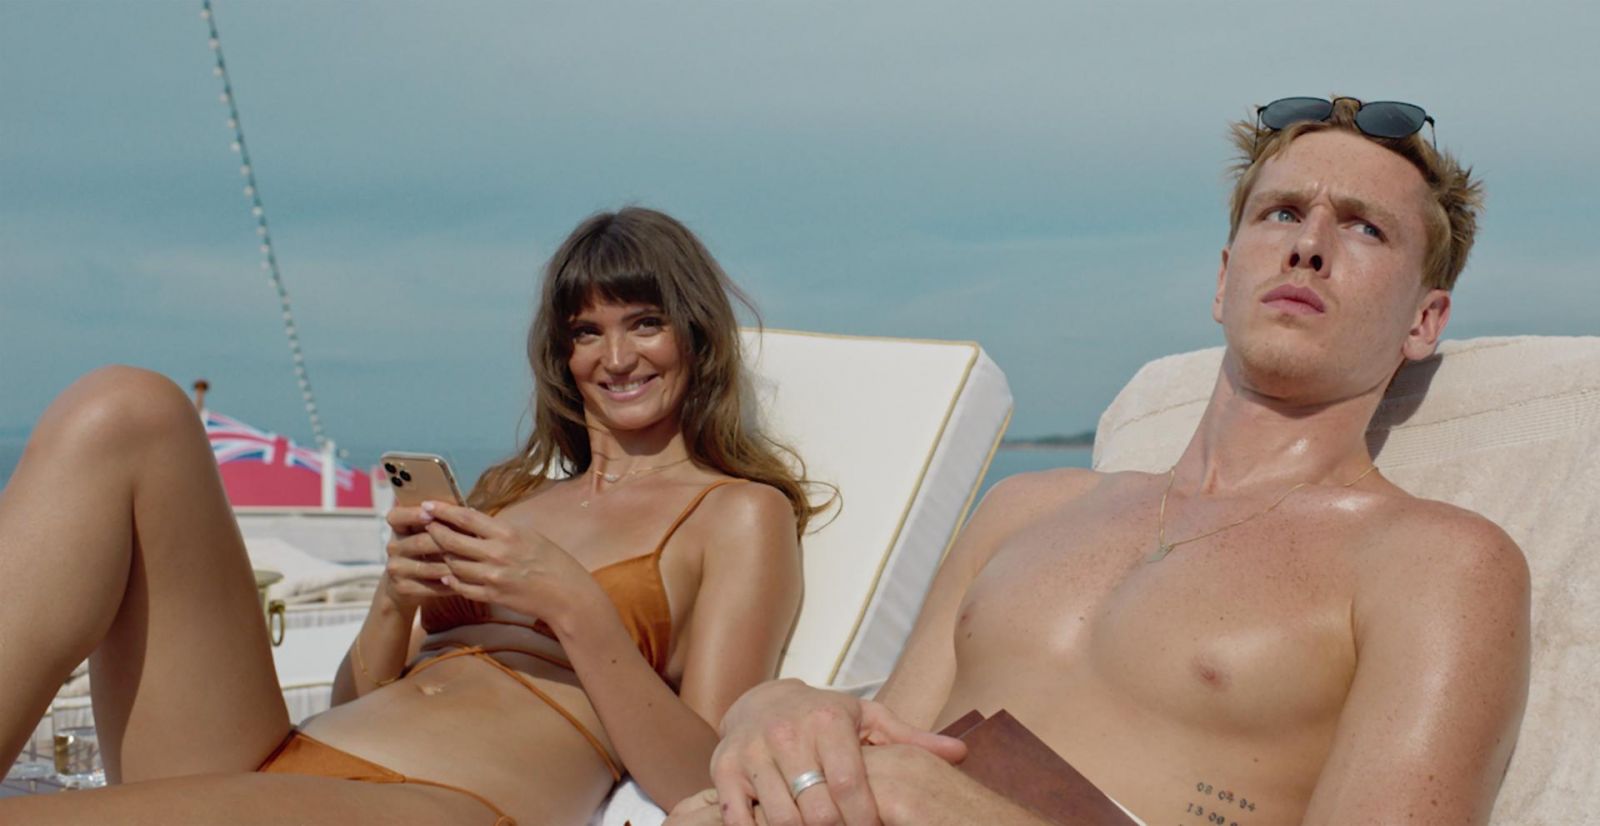 TRIANGLE OF SADNESS, de Ruben Östlund, se lleva la Palma de Oro en el Festival de Cannes 2022